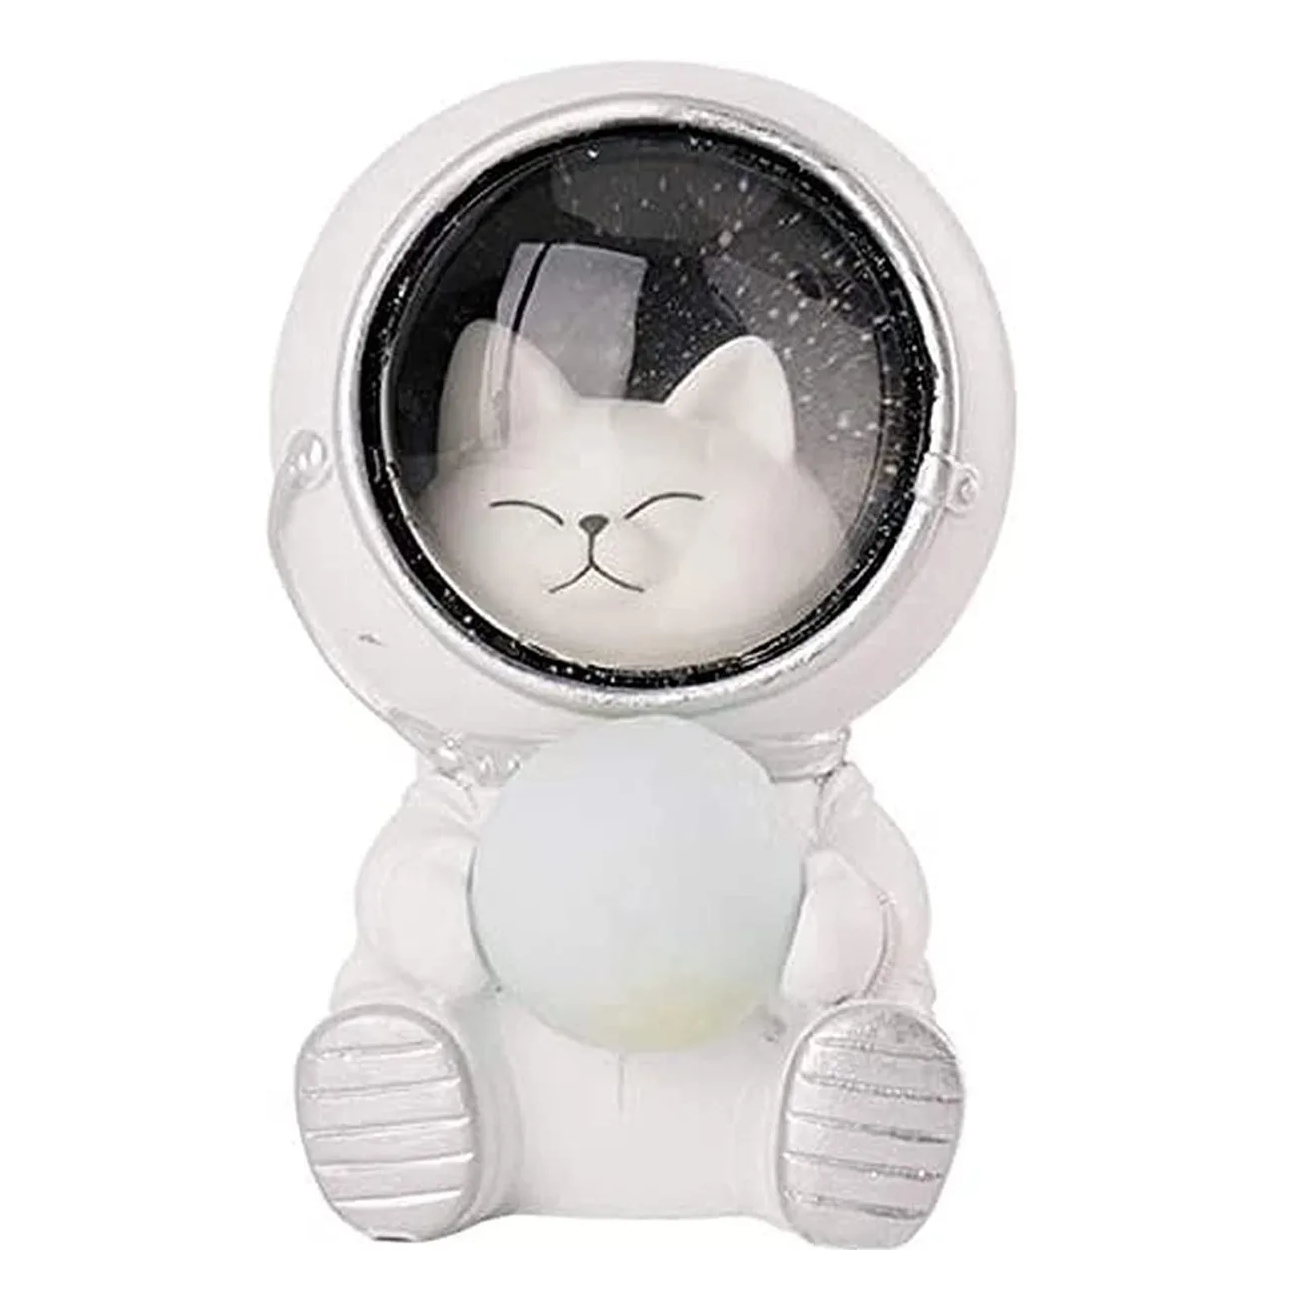 ‍Lampara Astronauta Gatito - Astronaut Cat Lamp